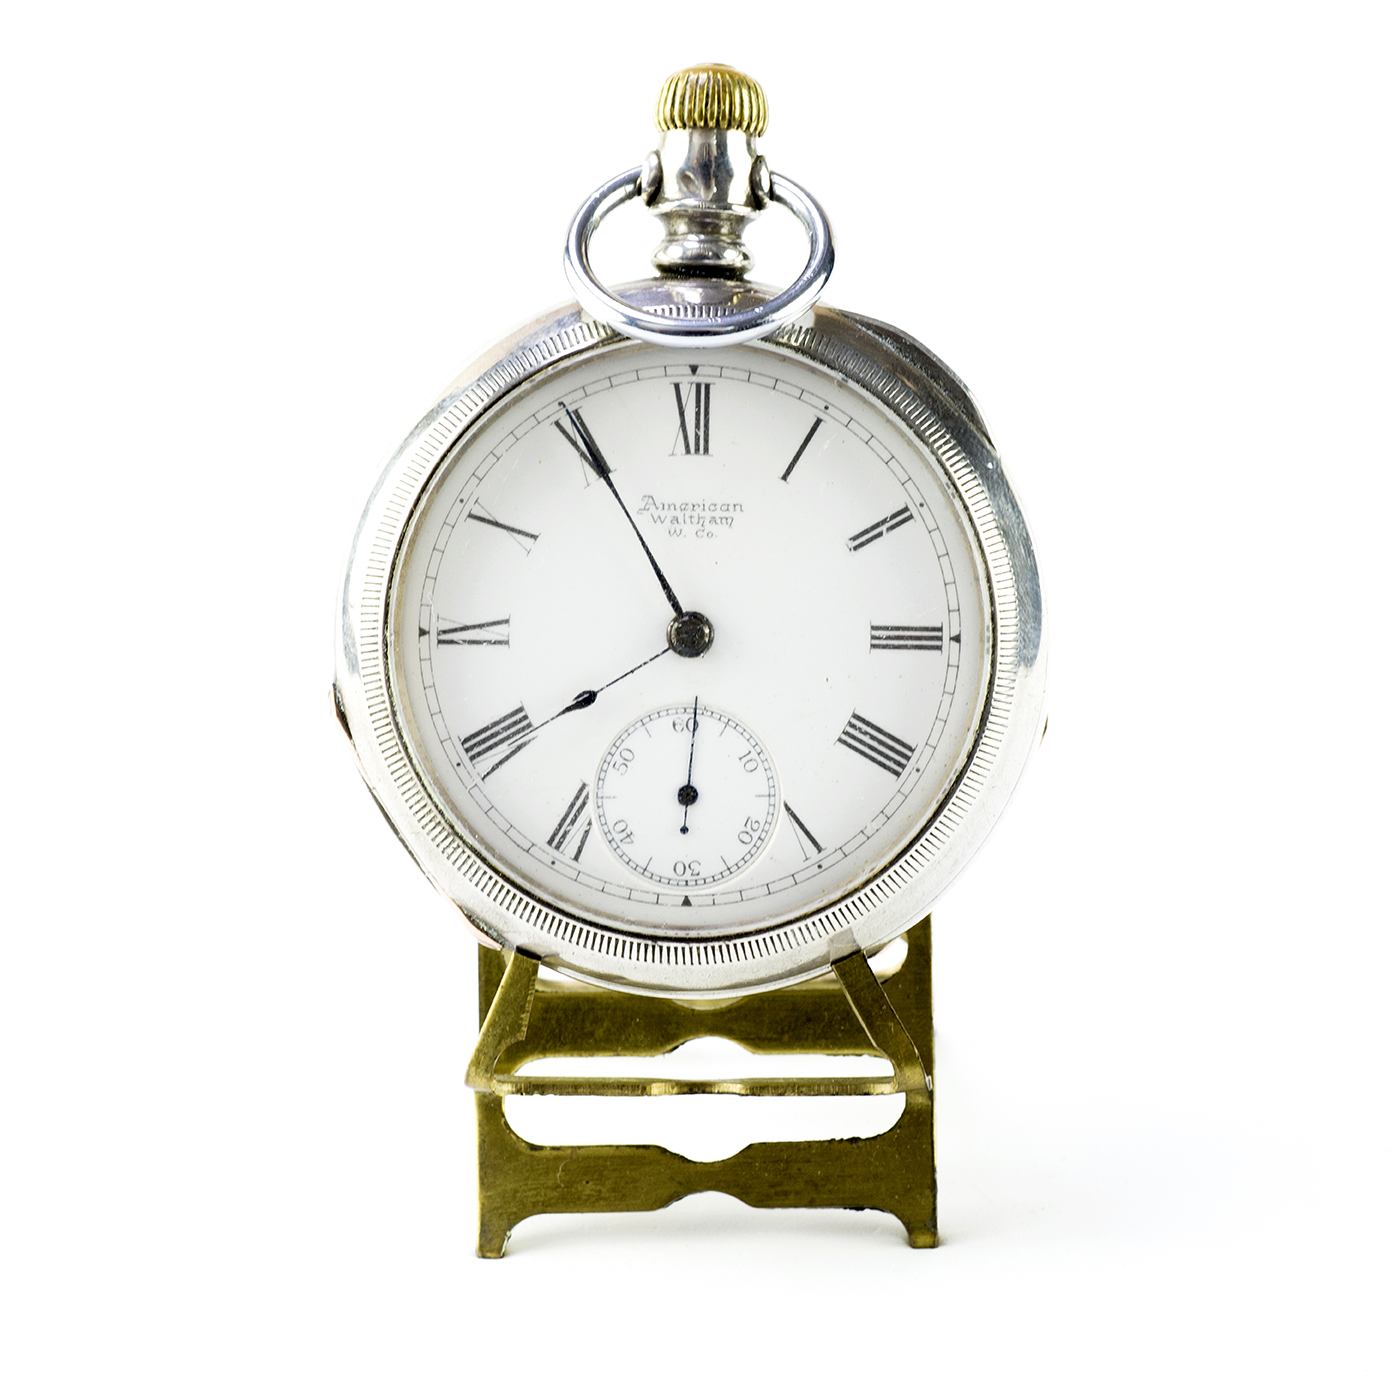 AMERICAN WALTHAM WATCH COMPANY (USA). Reloj de Bolsillo para caballero, Lepine y remontoir. Año, 1889.